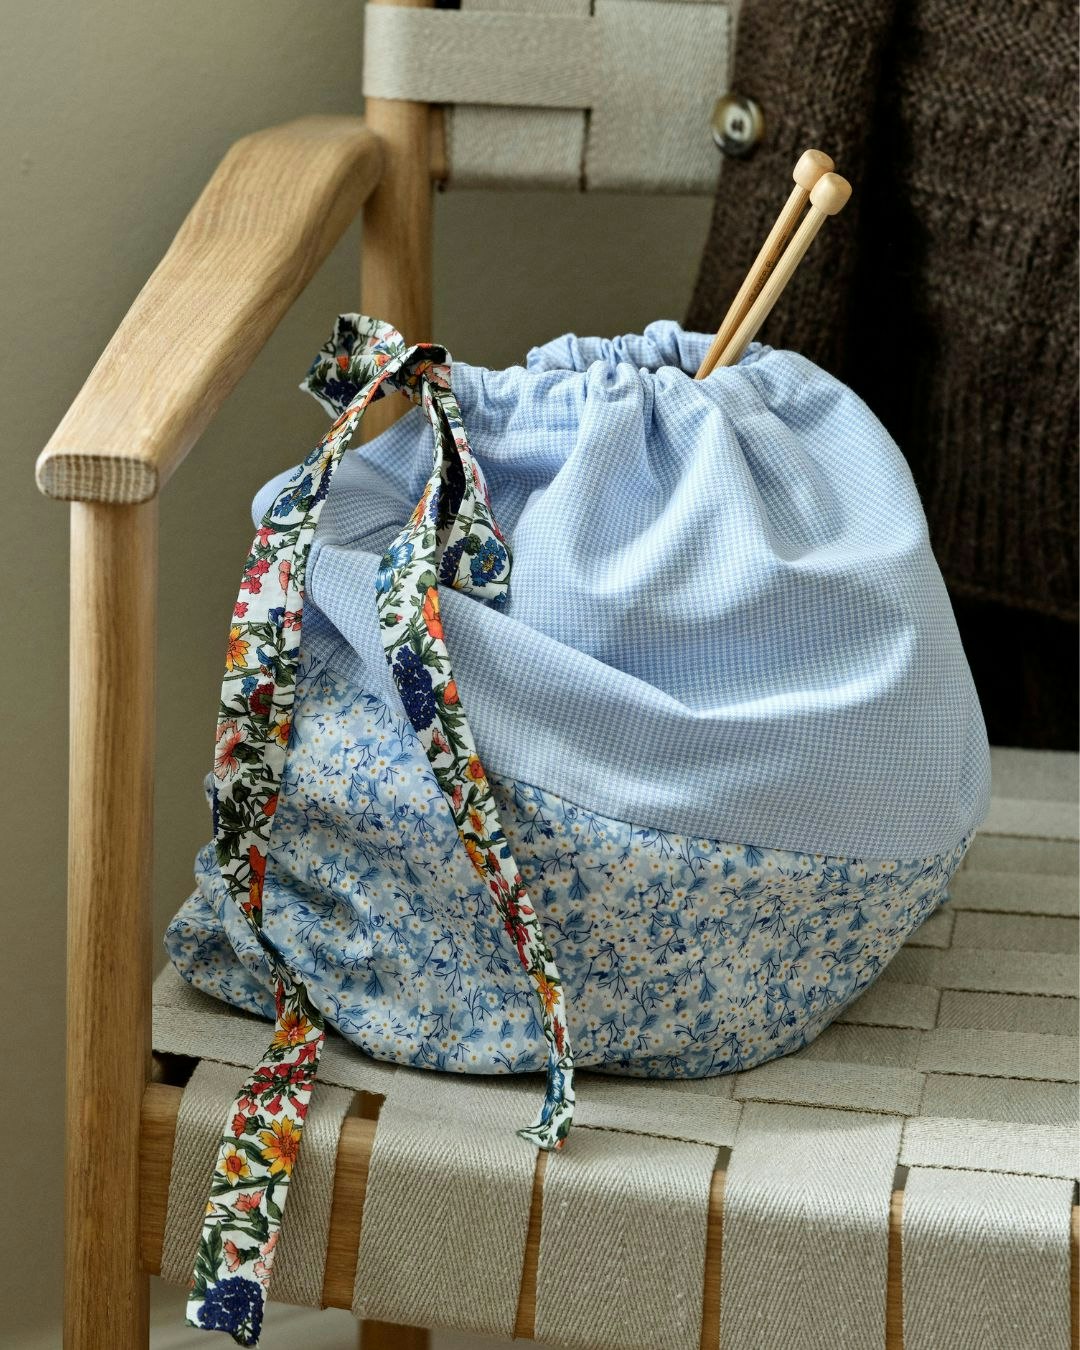 Strikkepose til strikketøj